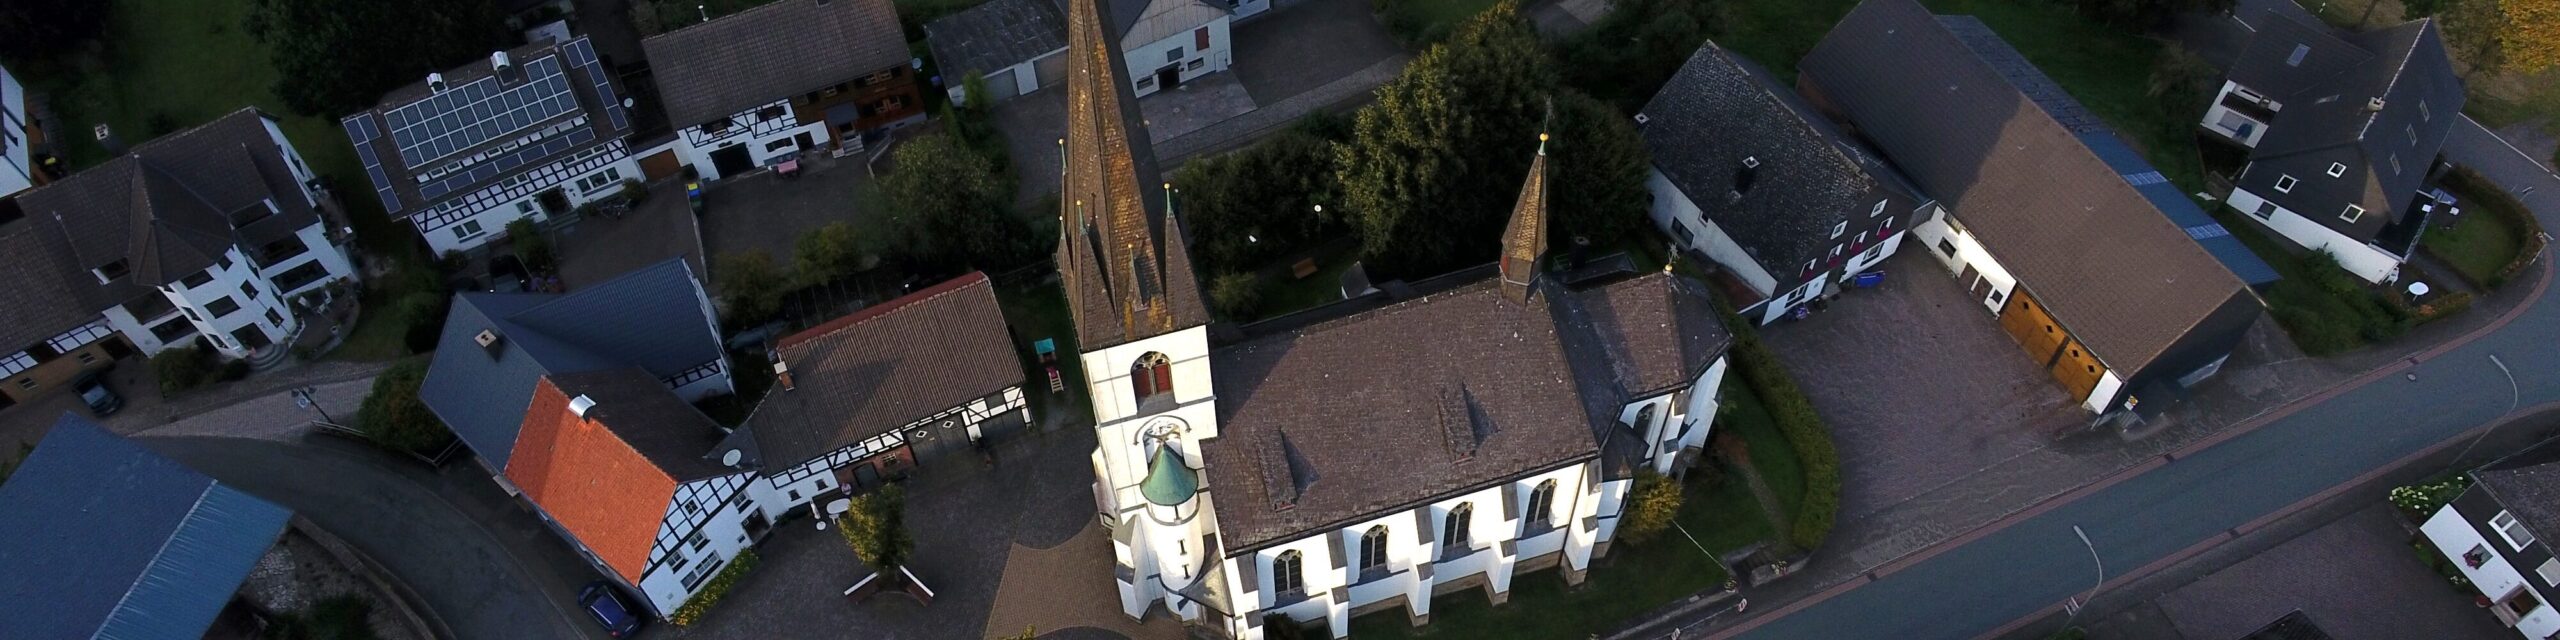 Kirche Düdinghausen